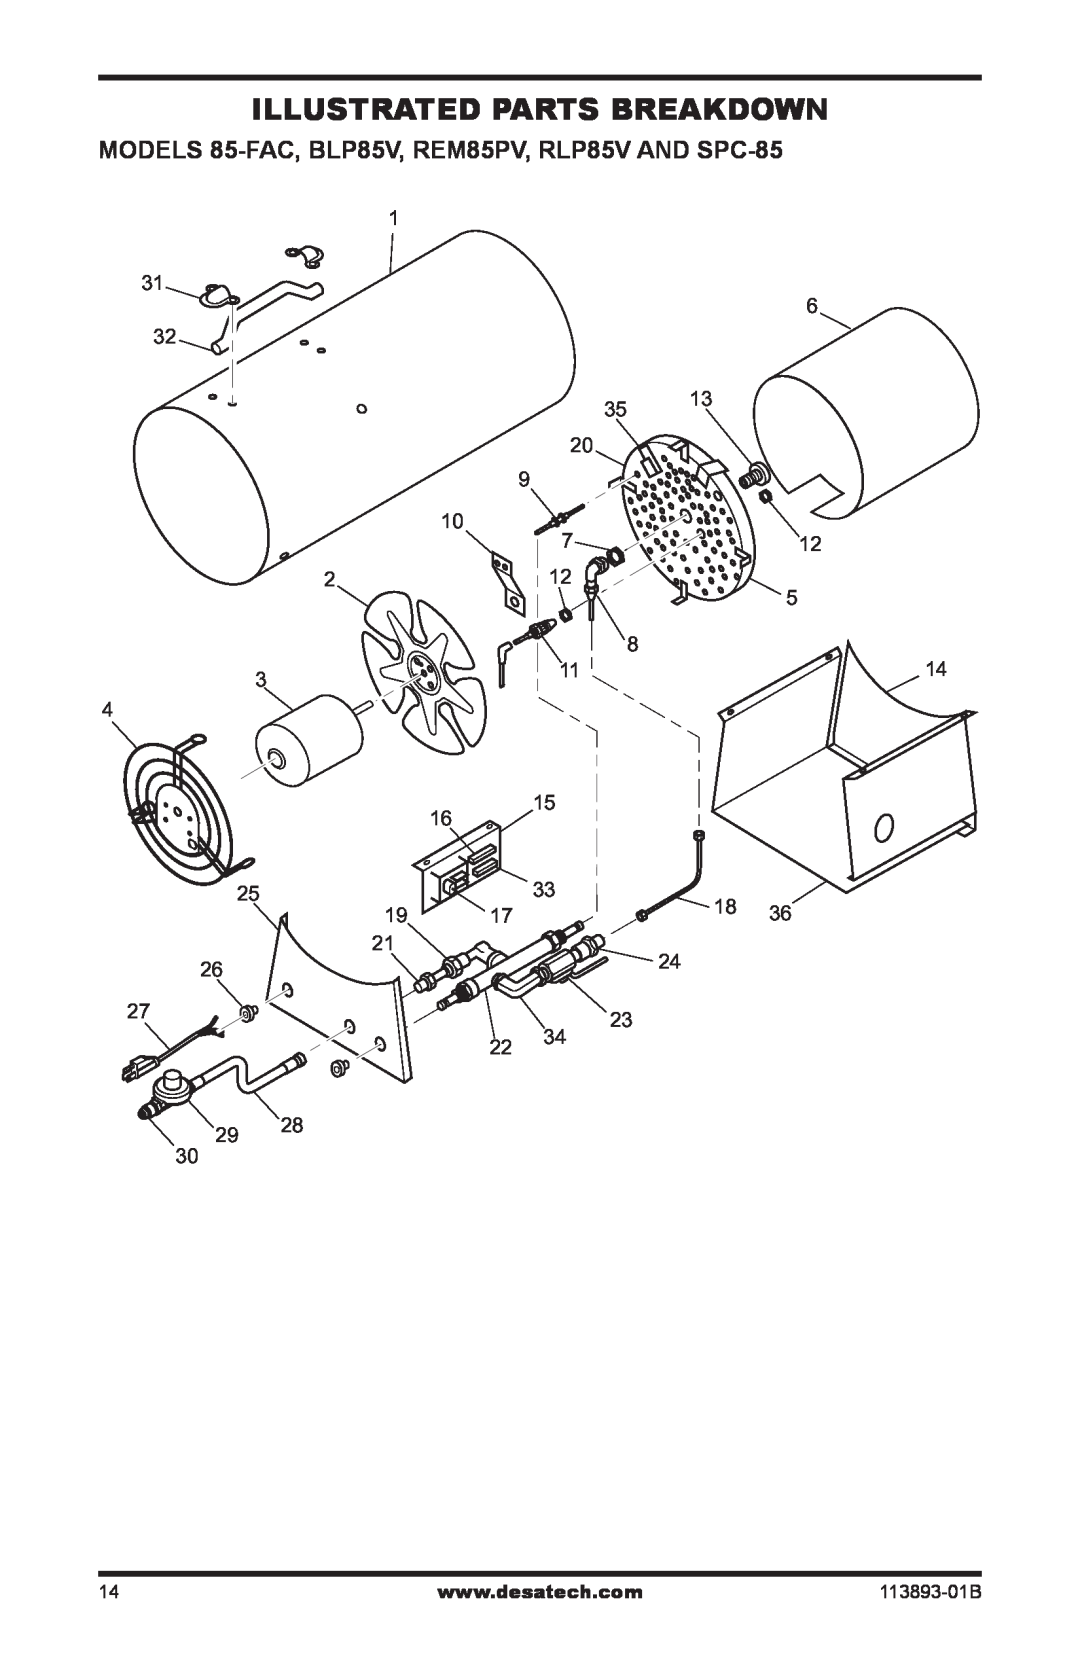 Desa Air Conditioner owner manual Illustrated Parts Breakdown, MODELS 85-FAC,BLP85V, REM85PV, RLP85V AND SPC-85 